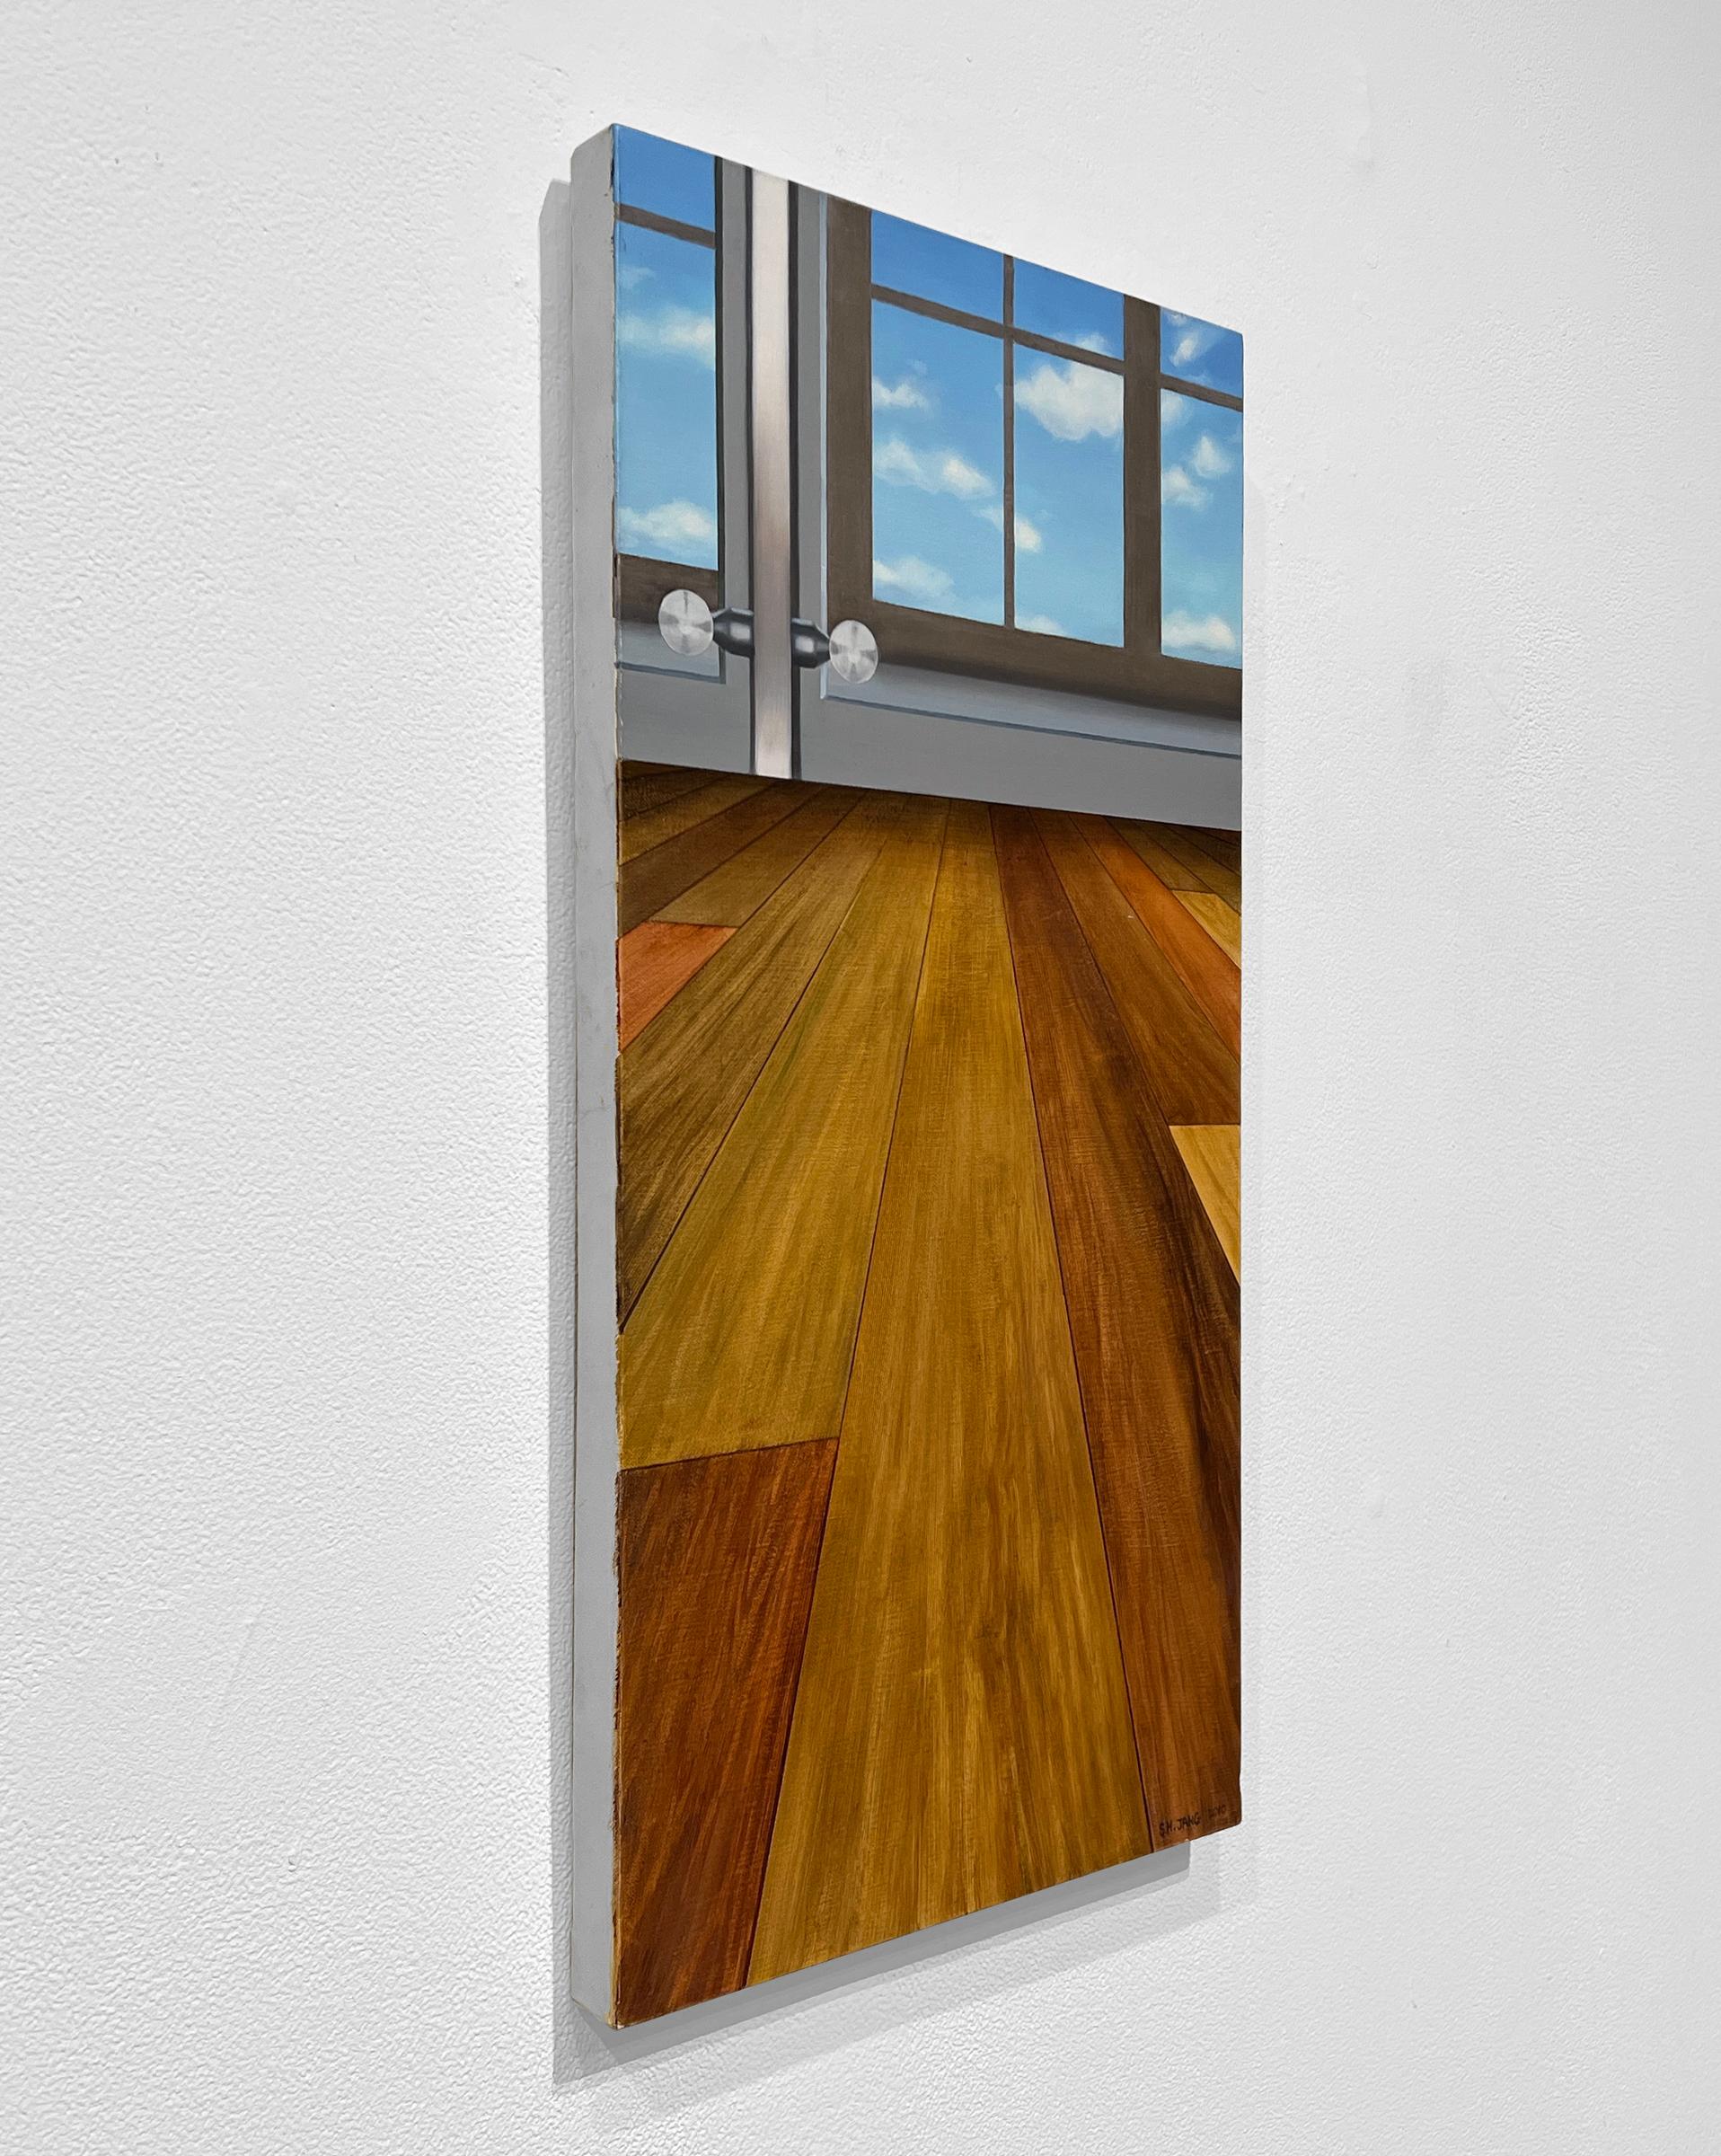 SKY IN LIVING ROOM – zeitgenössischer Realismus/Interieurszene mit Fenster (Braun), Interior Painting, von Sunghee Jang